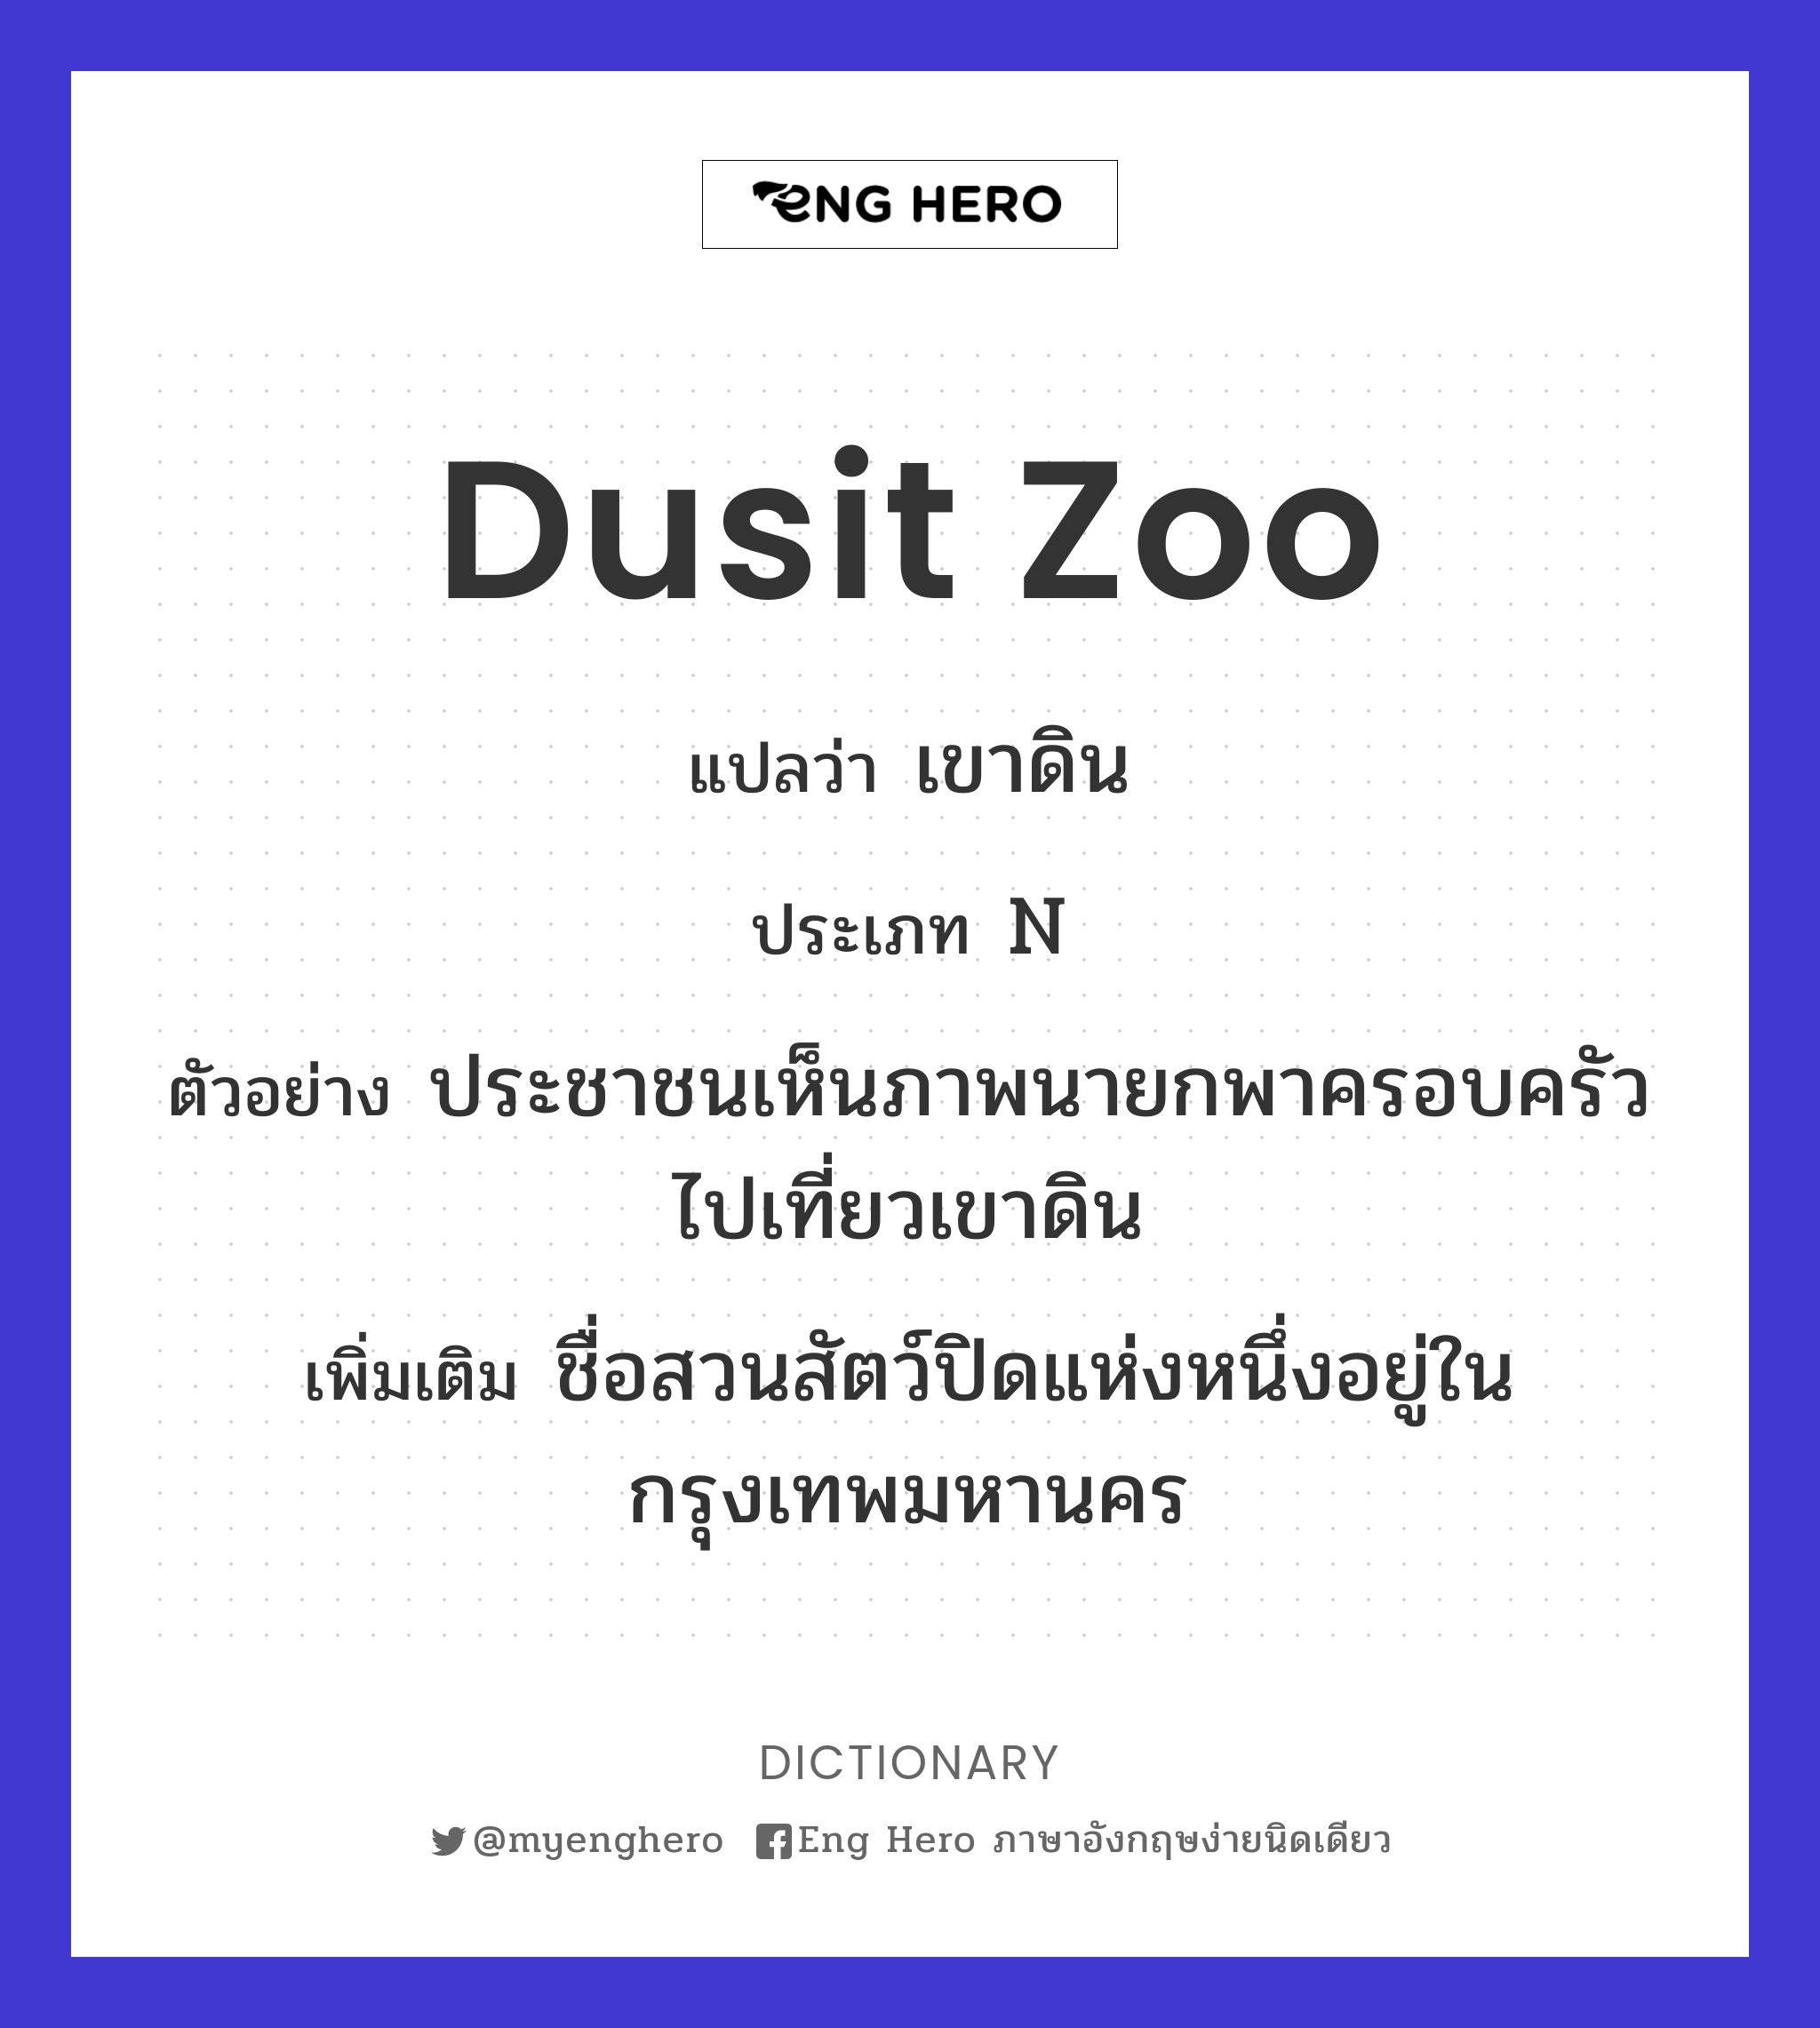 Dusit zoo